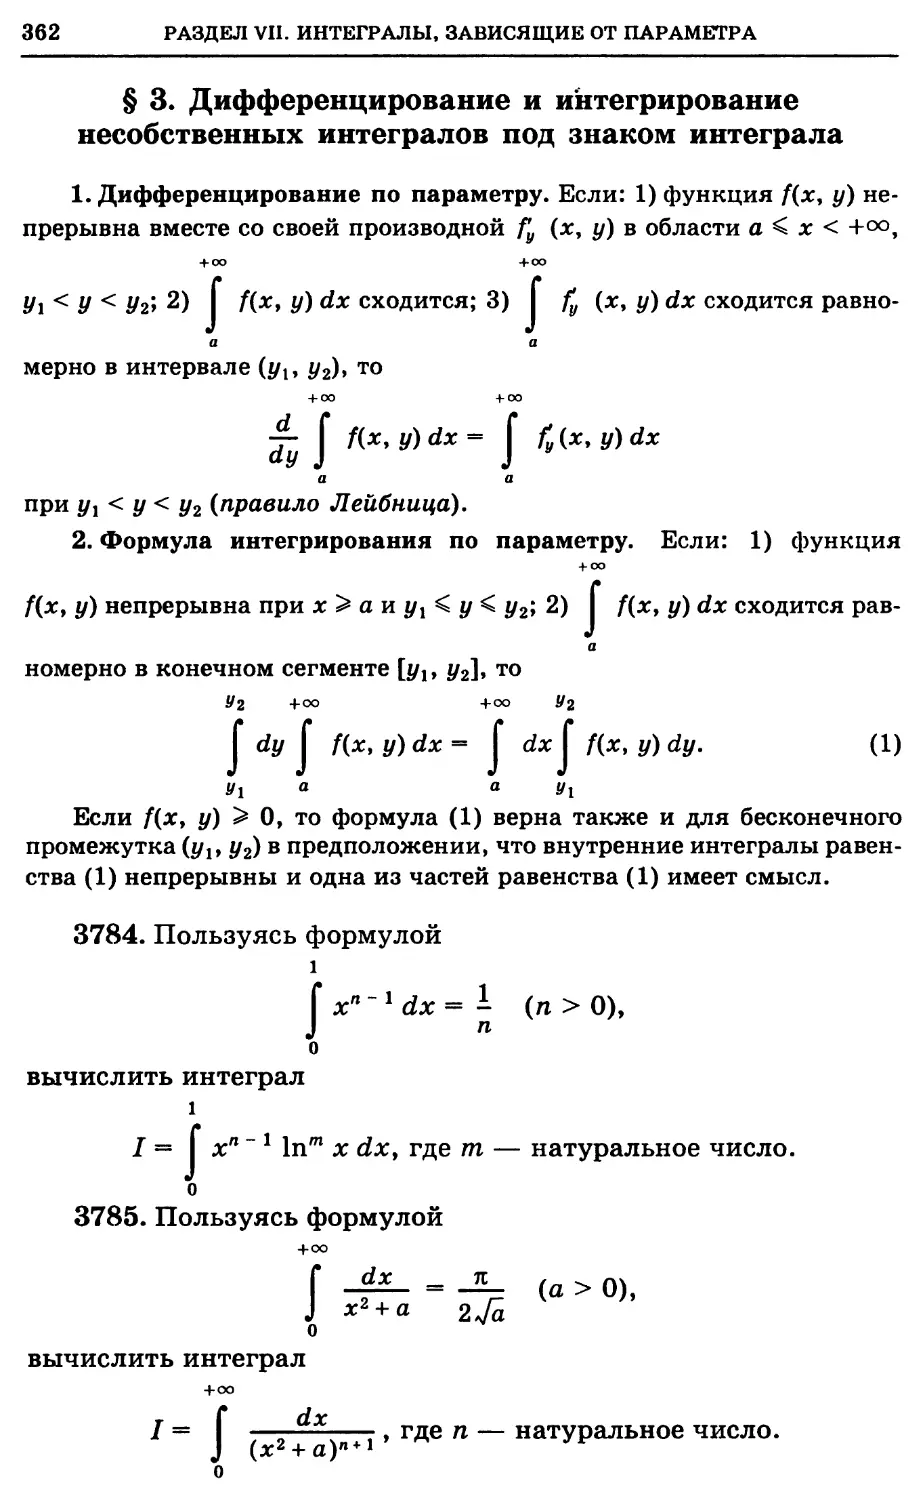 §3. Дифференцирование и интегрирование несобственных интегралов под знаком интеграла